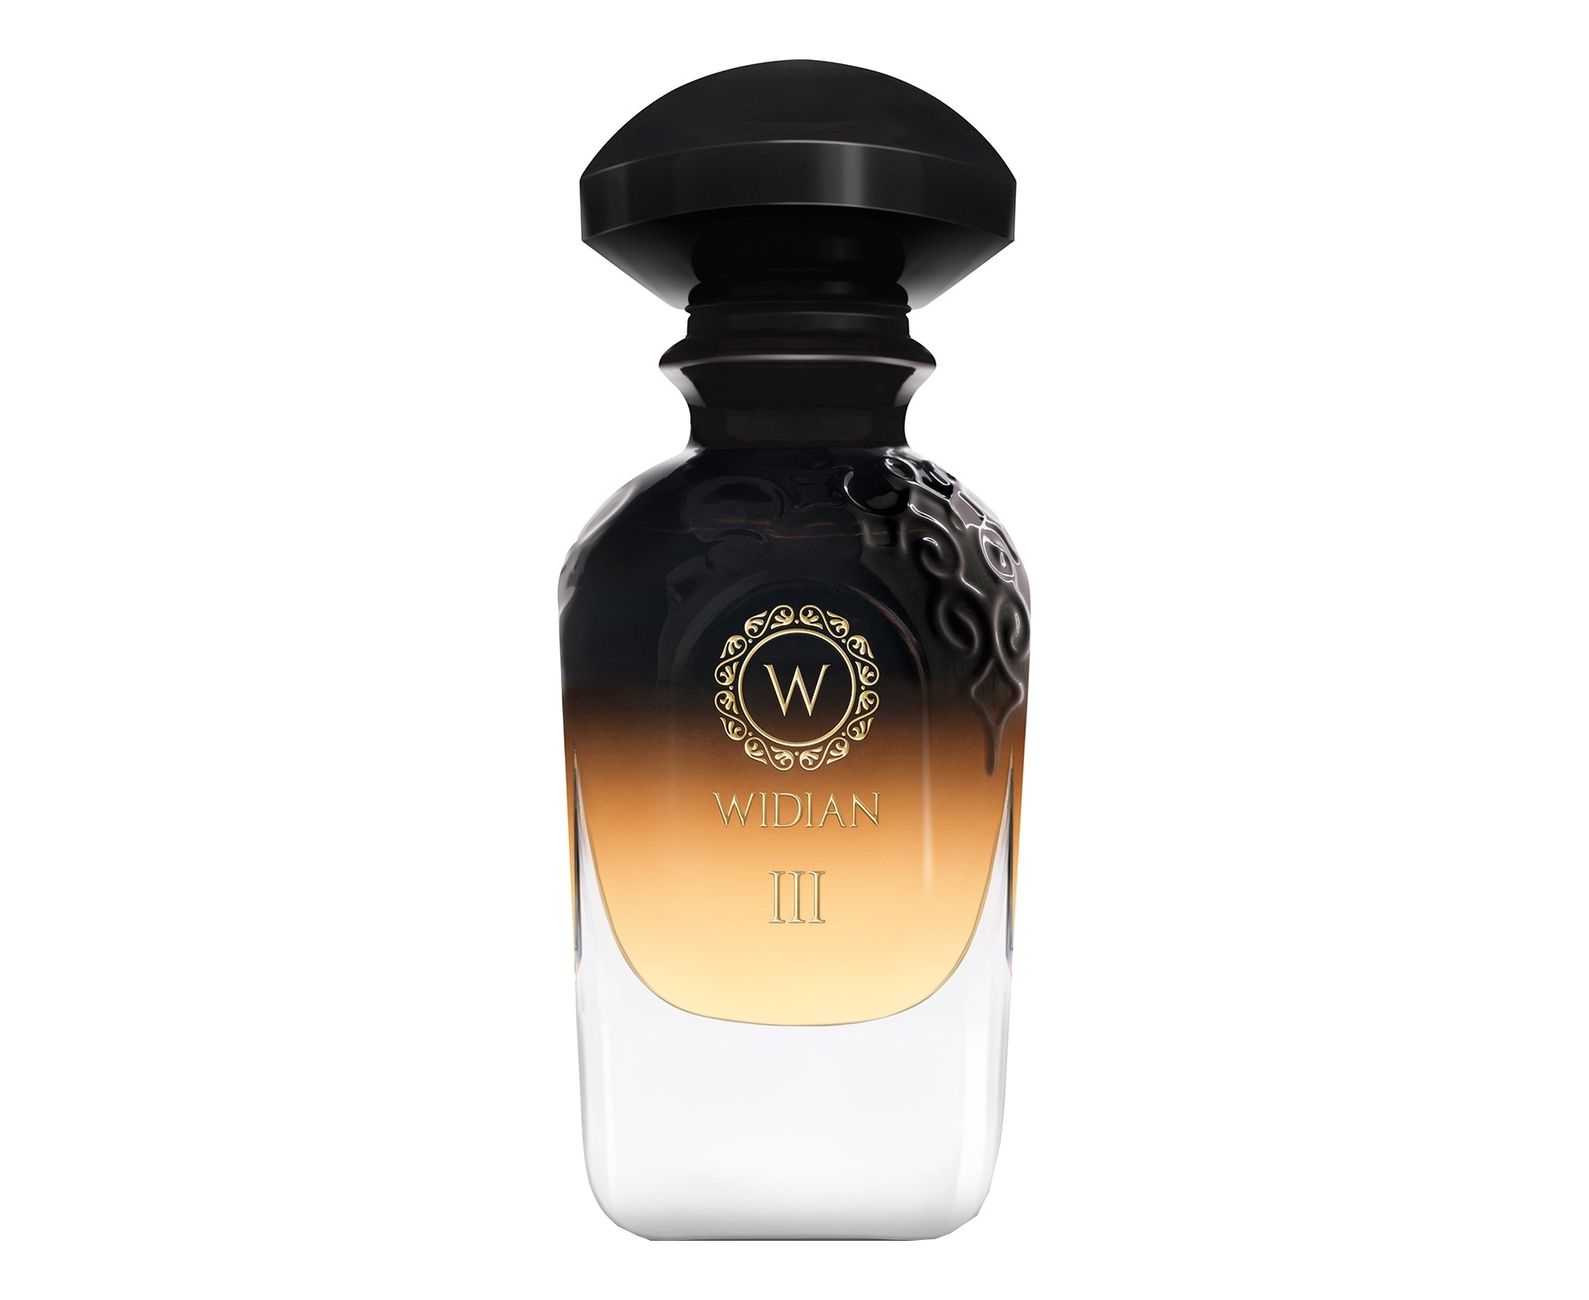 Arabia 1. AJ Arabia Widian Black 2 Parfum 50ml. AJ Arabia Widian Black collection. Духи AJ Arabia Widian Black 4. AJ Arabia Widian Black III parfume 50ml.